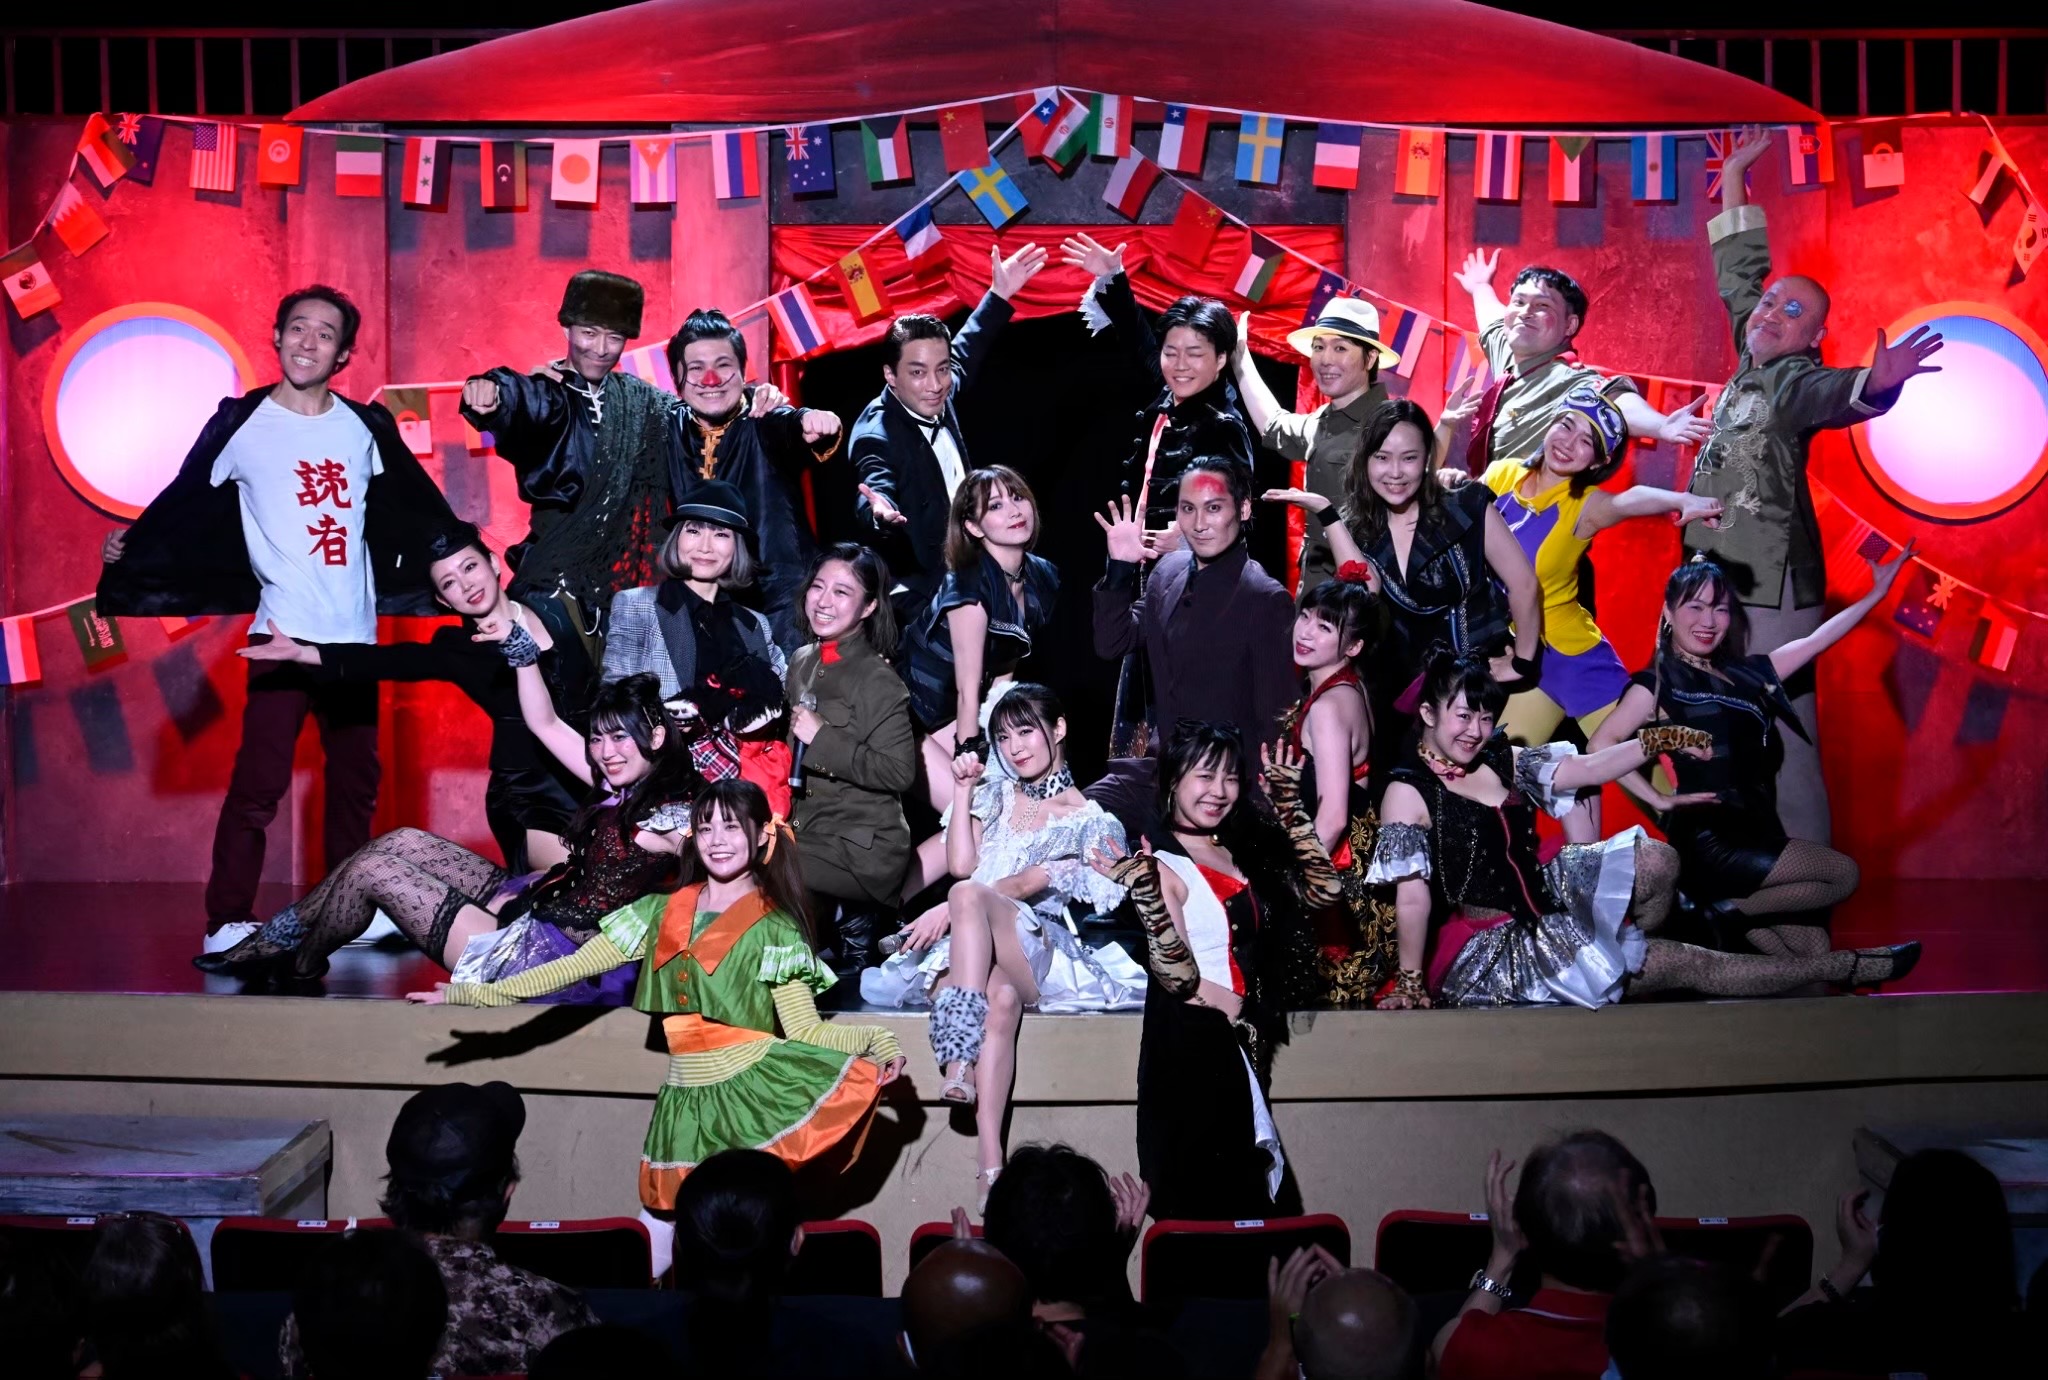 オーディション 劇団ドガドガプラス4月公演「sexy女優事変」出演者募集 歌って踊れる浅草の劇団です。 主催：劇団ドガドガプラス、カテゴリ：舞台